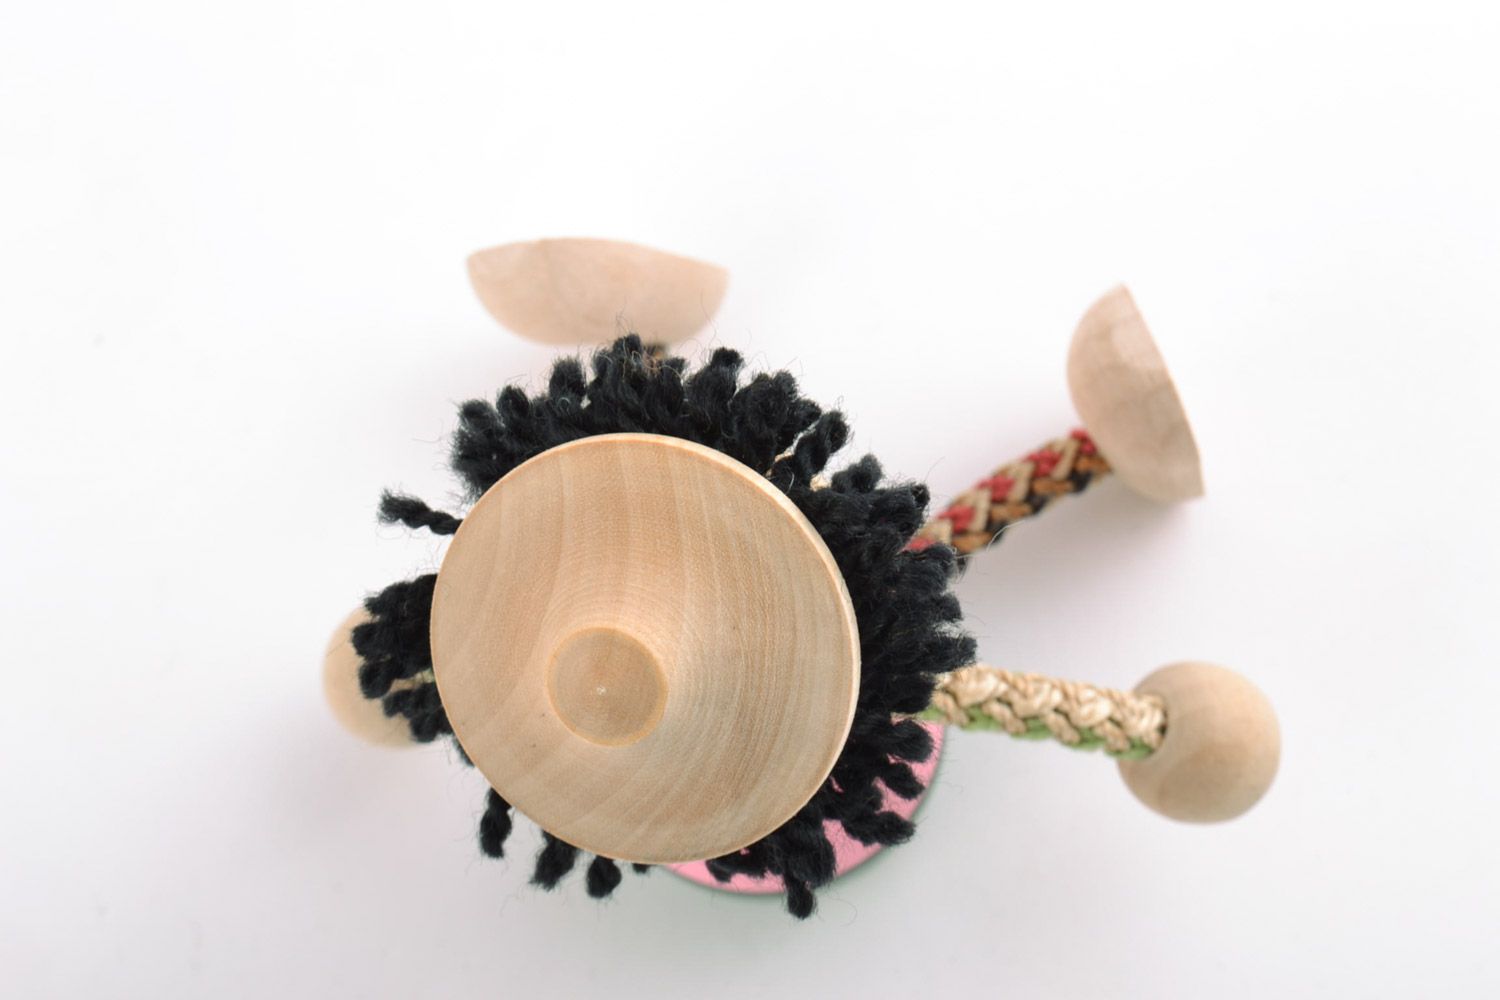 Öko Spielzeug aus Holz handmade umweltfreundlich künstlerisch Junge foto 4